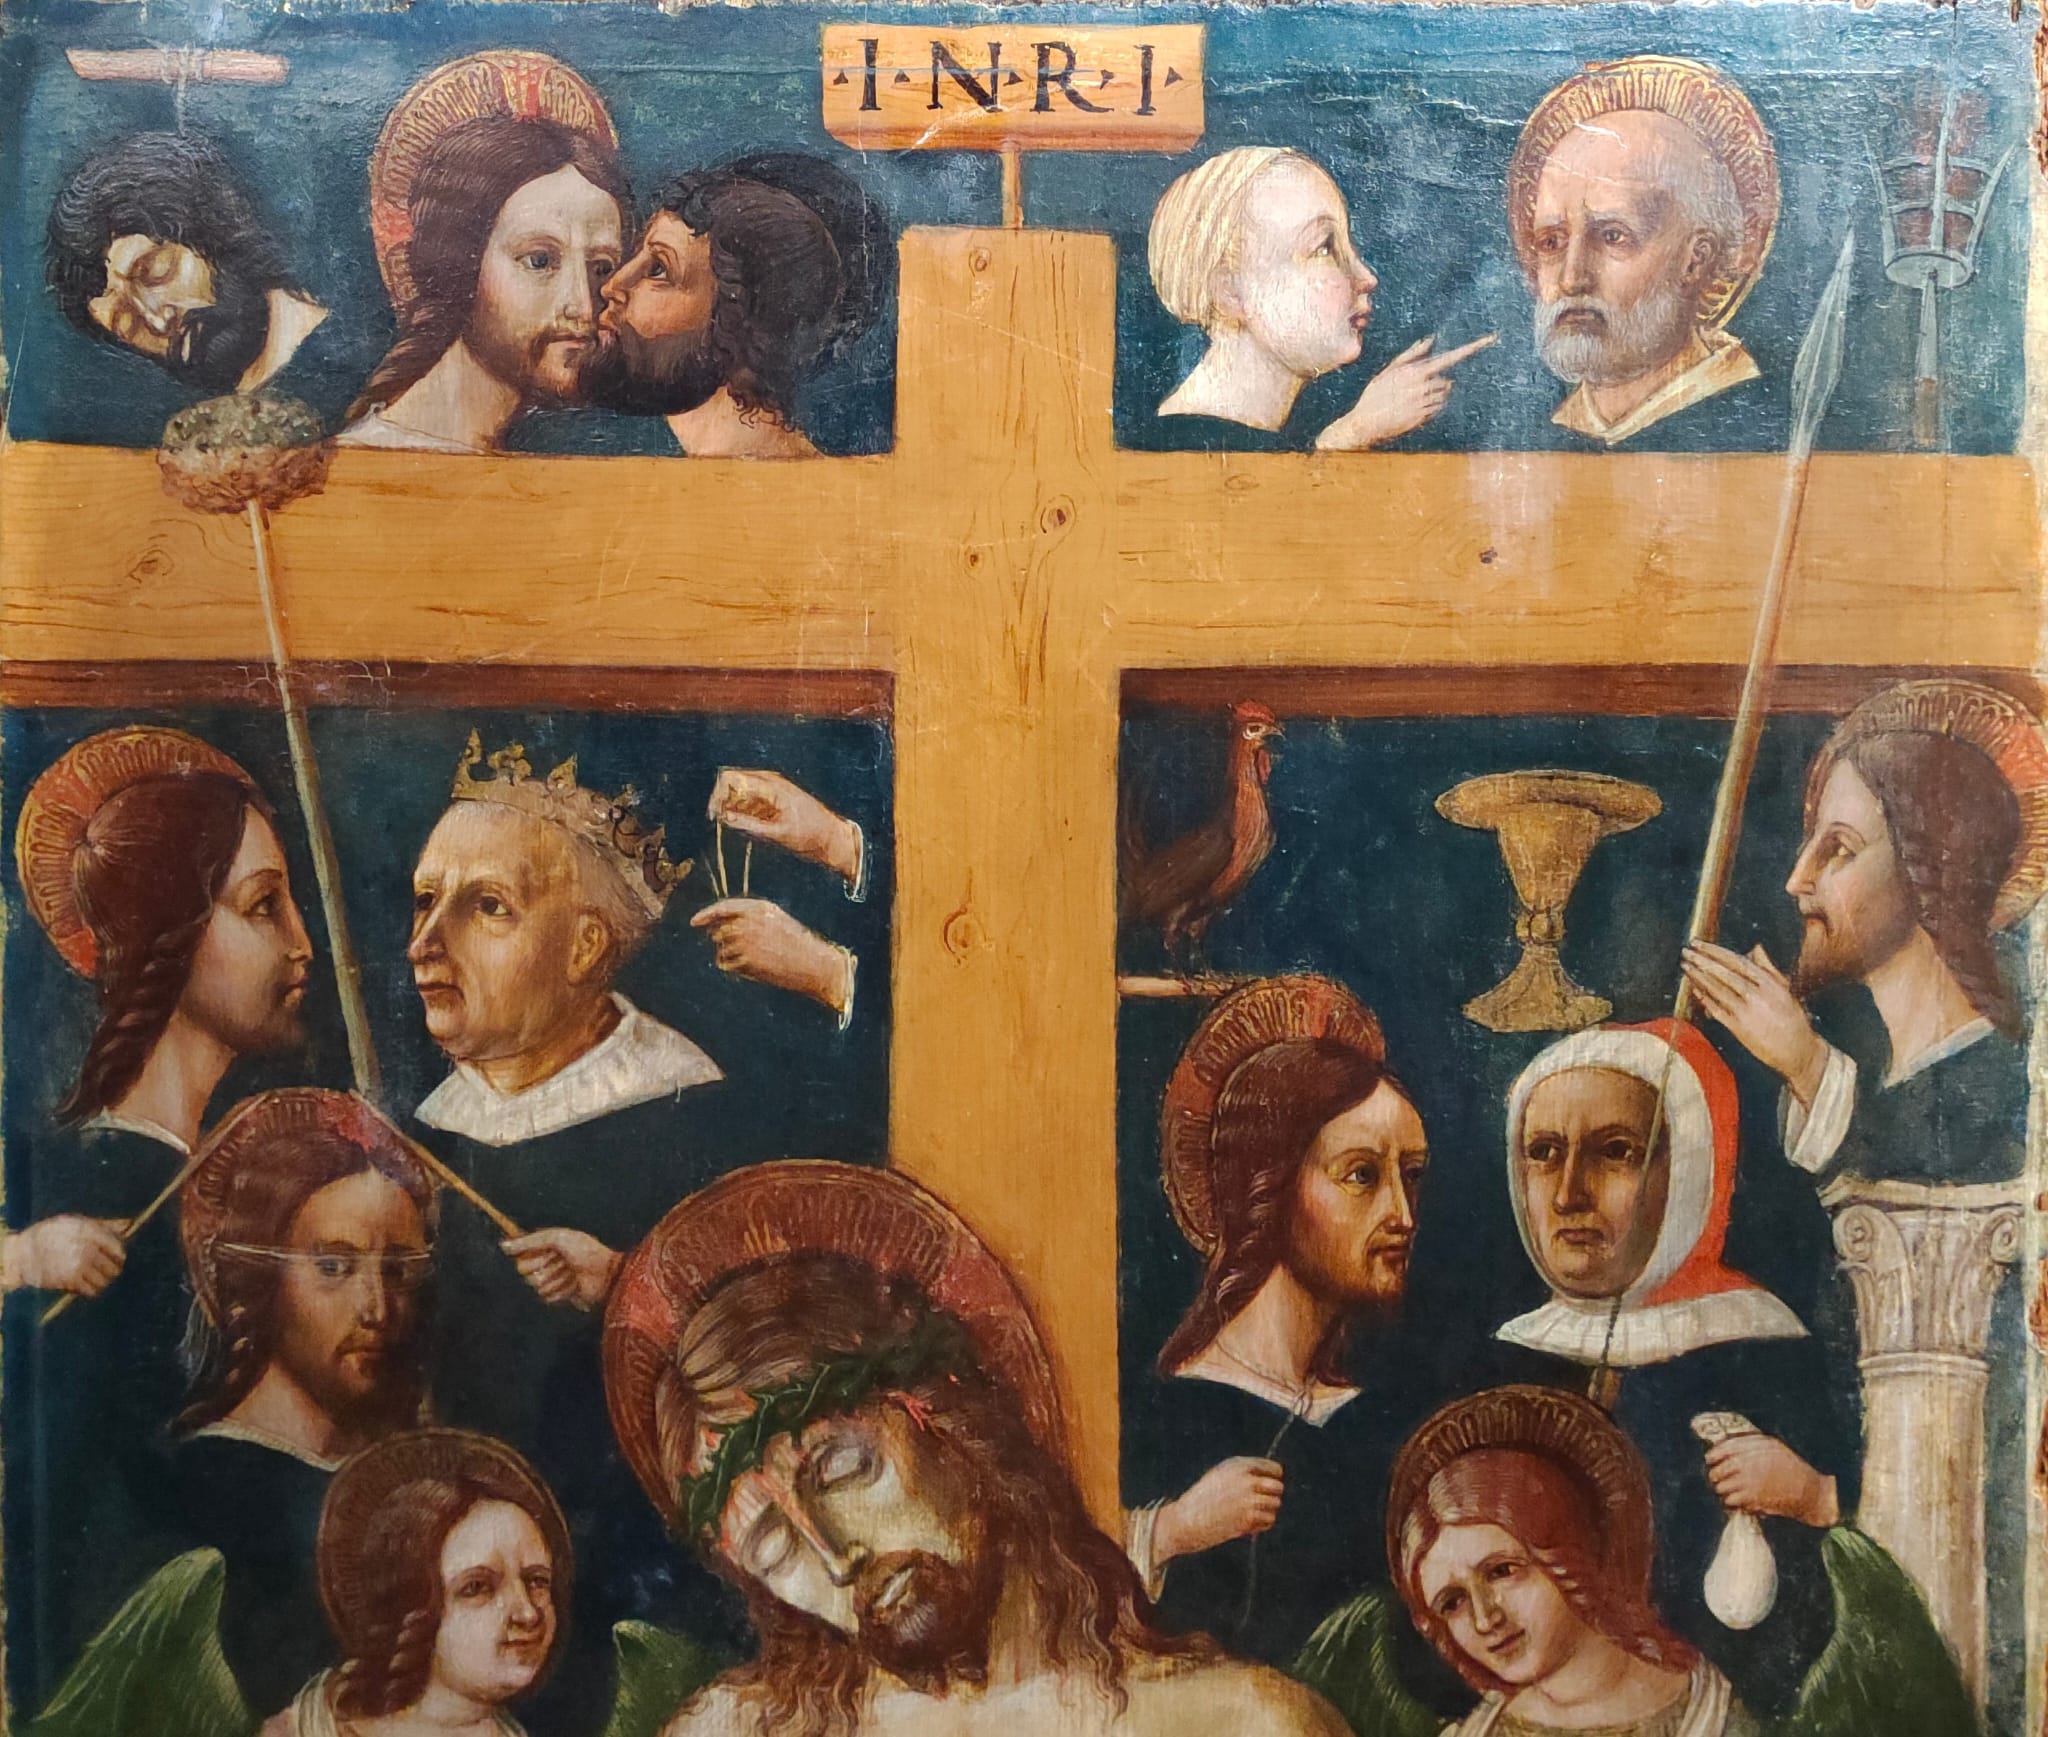 Gli 'Arma Christi' di un trittico del Rinascimento veronese - Chiese Vive - Chiese Verona